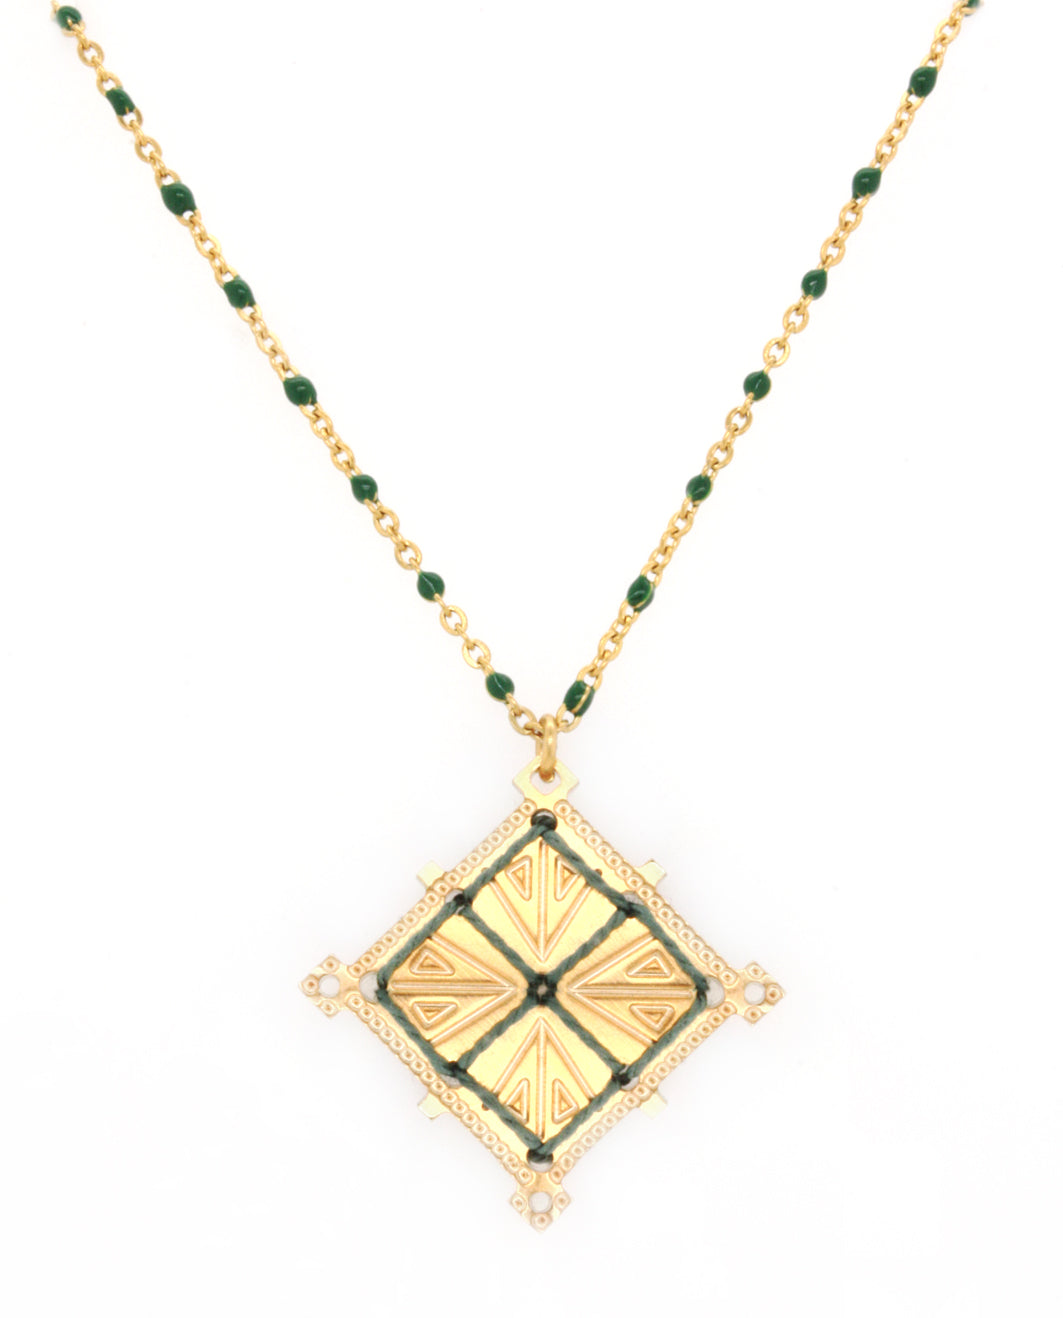 Kalidoscopio Rosario necklace